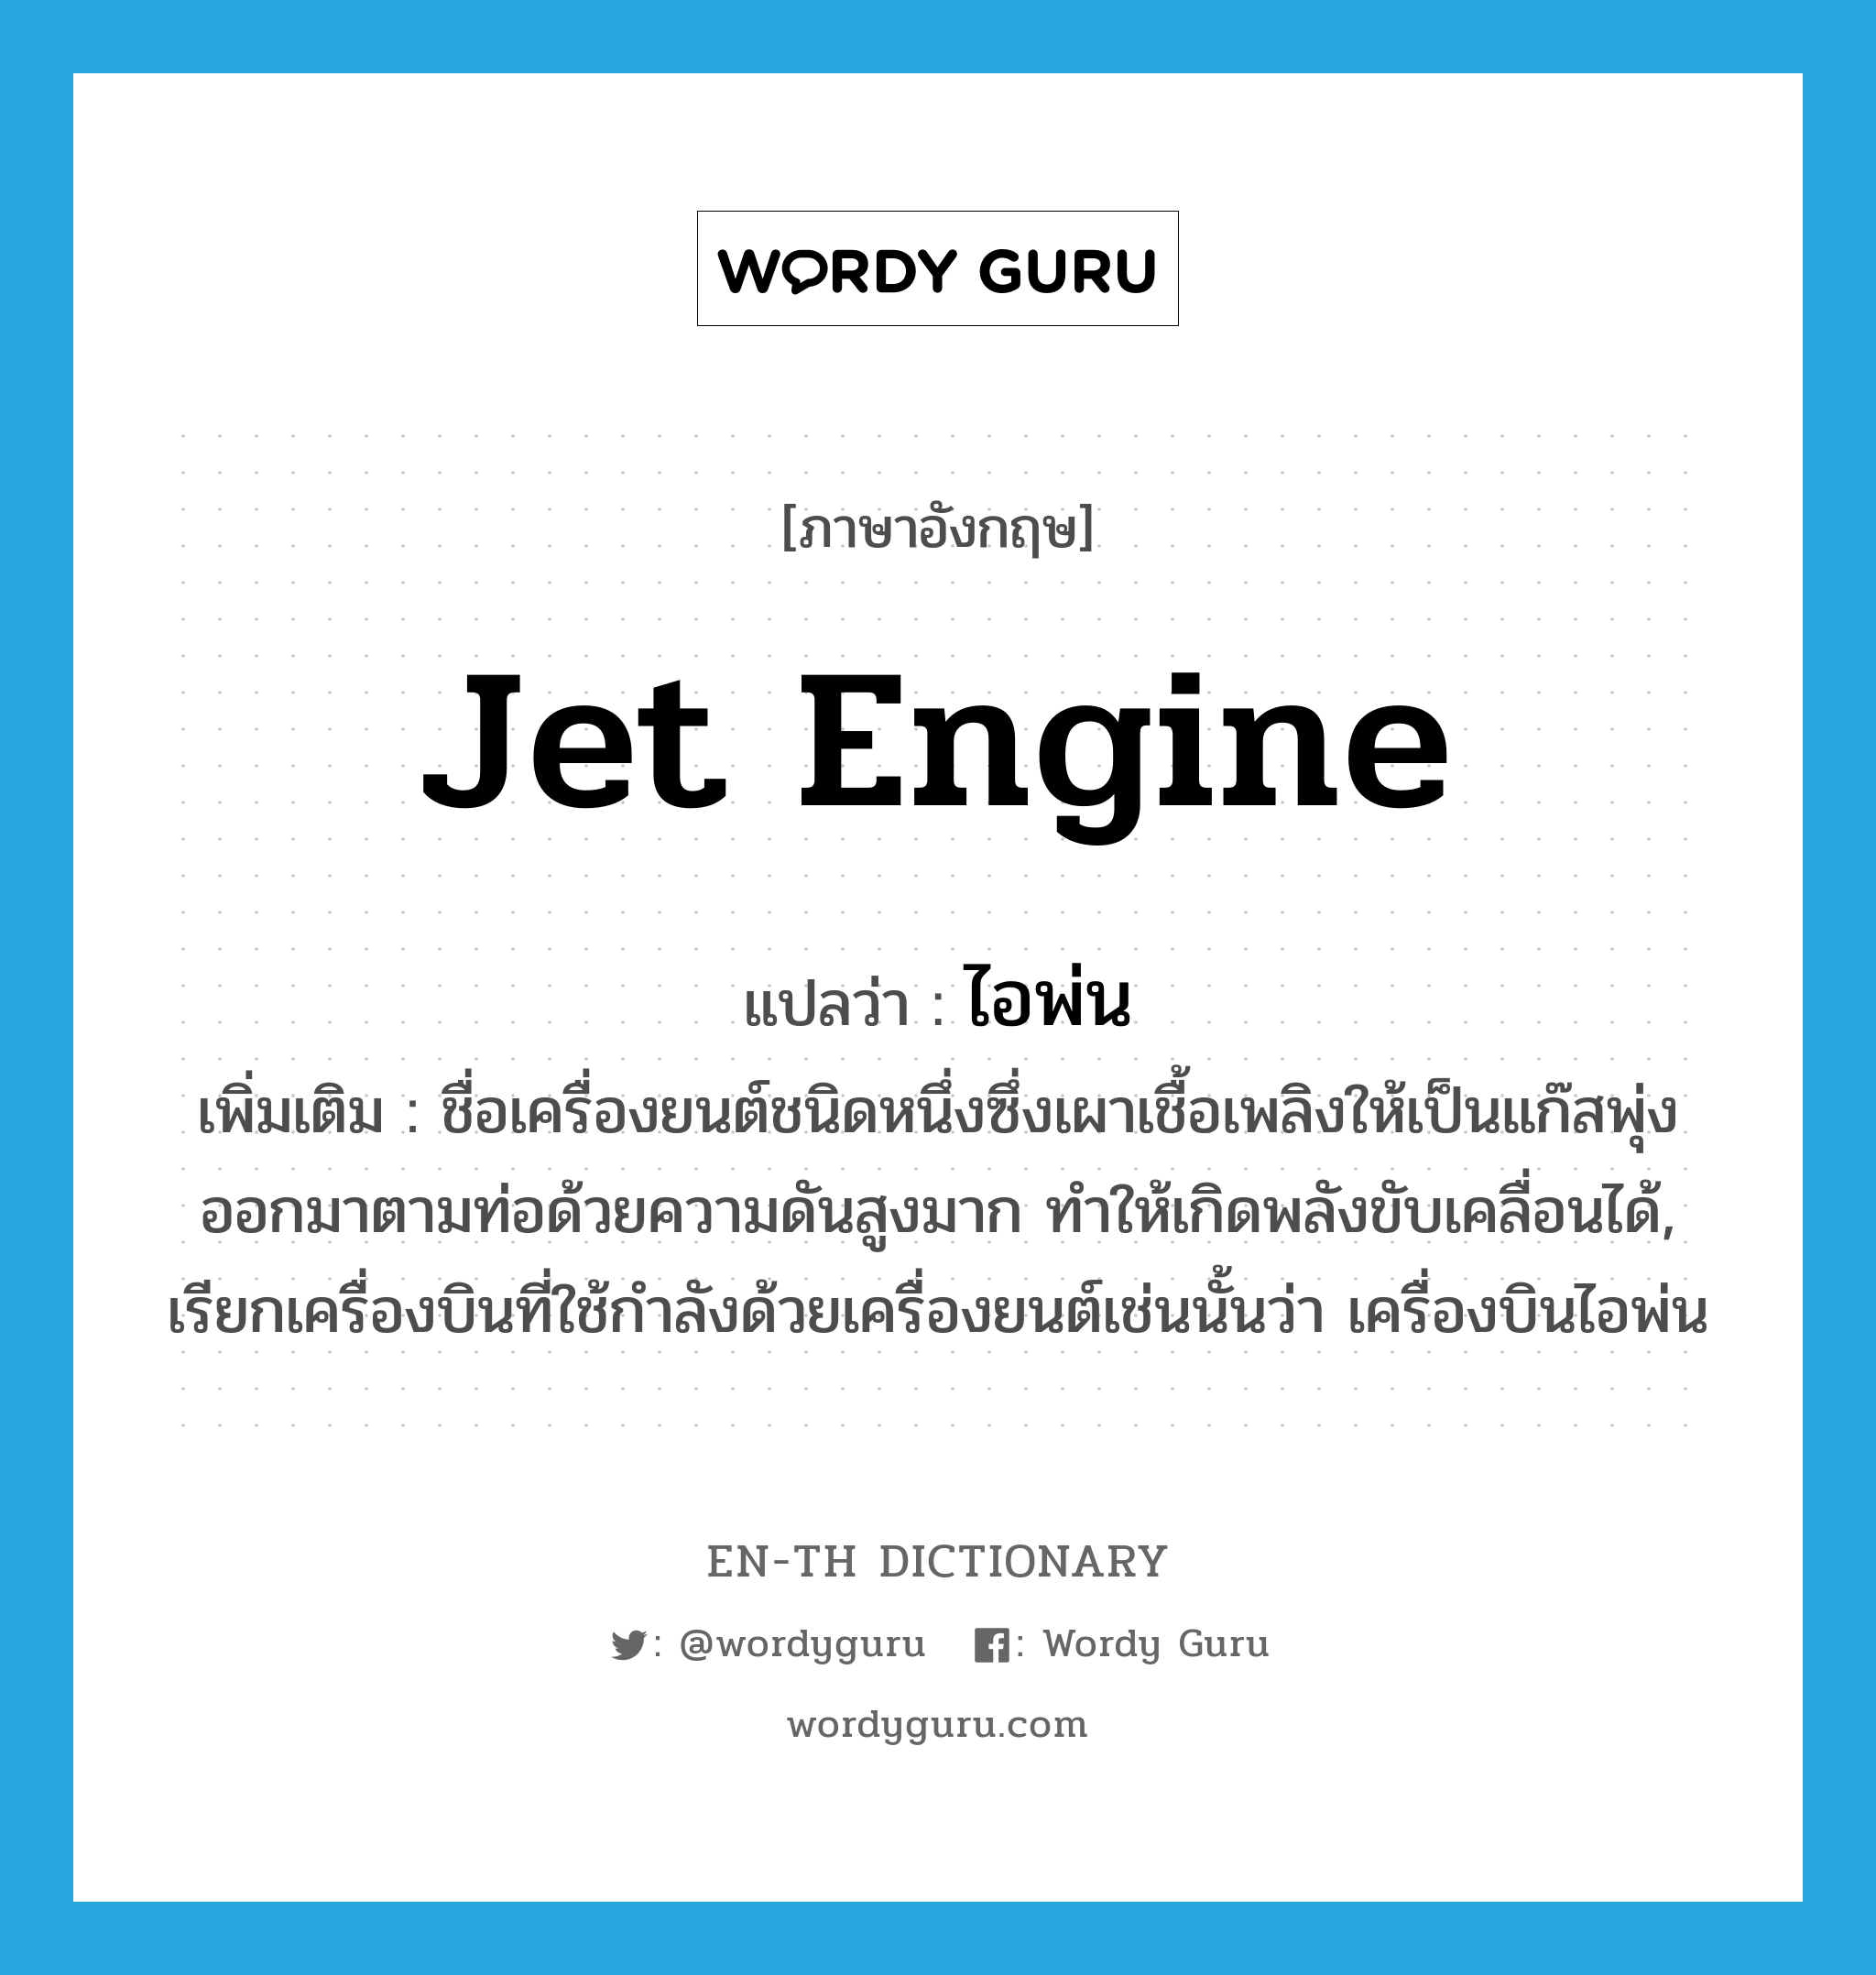 jet engine แปลว่า?, คำศัพท์ภาษาอังกฤษ jet engine แปลว่า ไอพ่น ประเภท N เพิ่มเติม ชื่อเครื่องยนต์ชนิดหนึ่งซึ่งเผาเชื้อเพลิงให้เป็นแก๊สพุ่งออกมาตามท่อด้วยความดันสูงมาก ทำให้เกิดพลังขับเคลื่อนได้, เรียกเครื่องบินที่ใช้กำลังด้วยเครื่องยนต์เช่นนั้นว่า เครื่องบินไอพ่น หมวด N